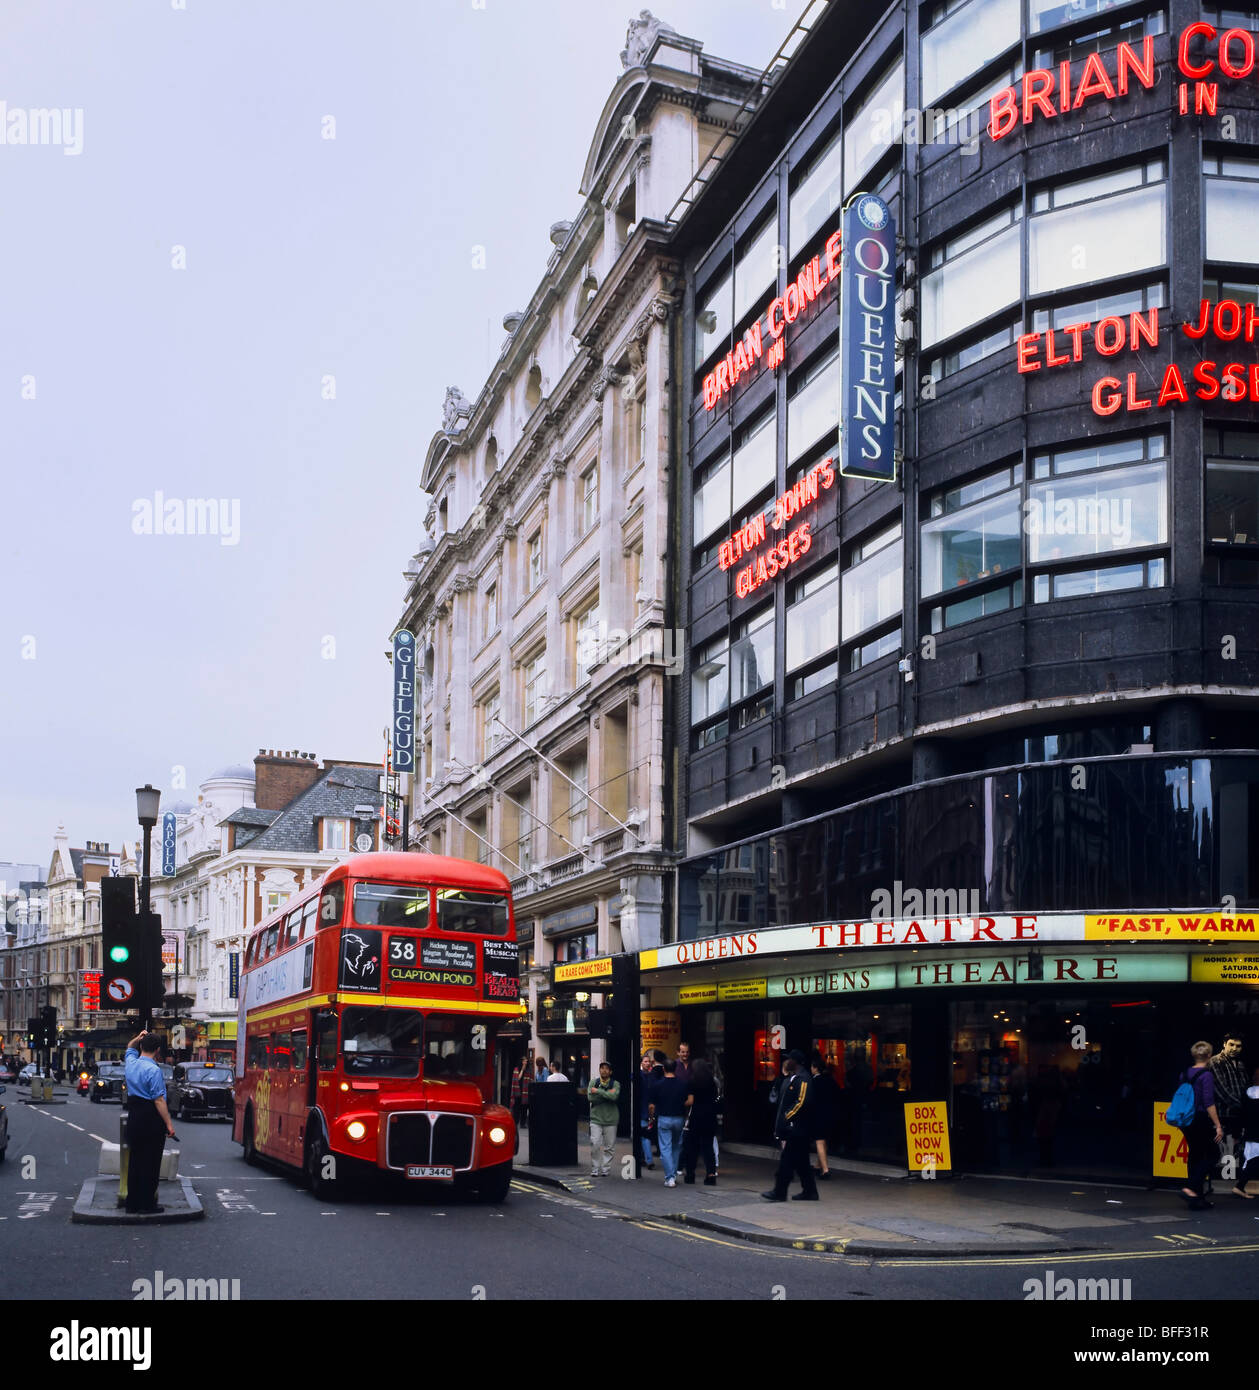 Teatro de Queens y red double decker bus Routemaster en Shaftesbury Avenue Londres, Inglaterra, Gran Bretaña Foto de stock